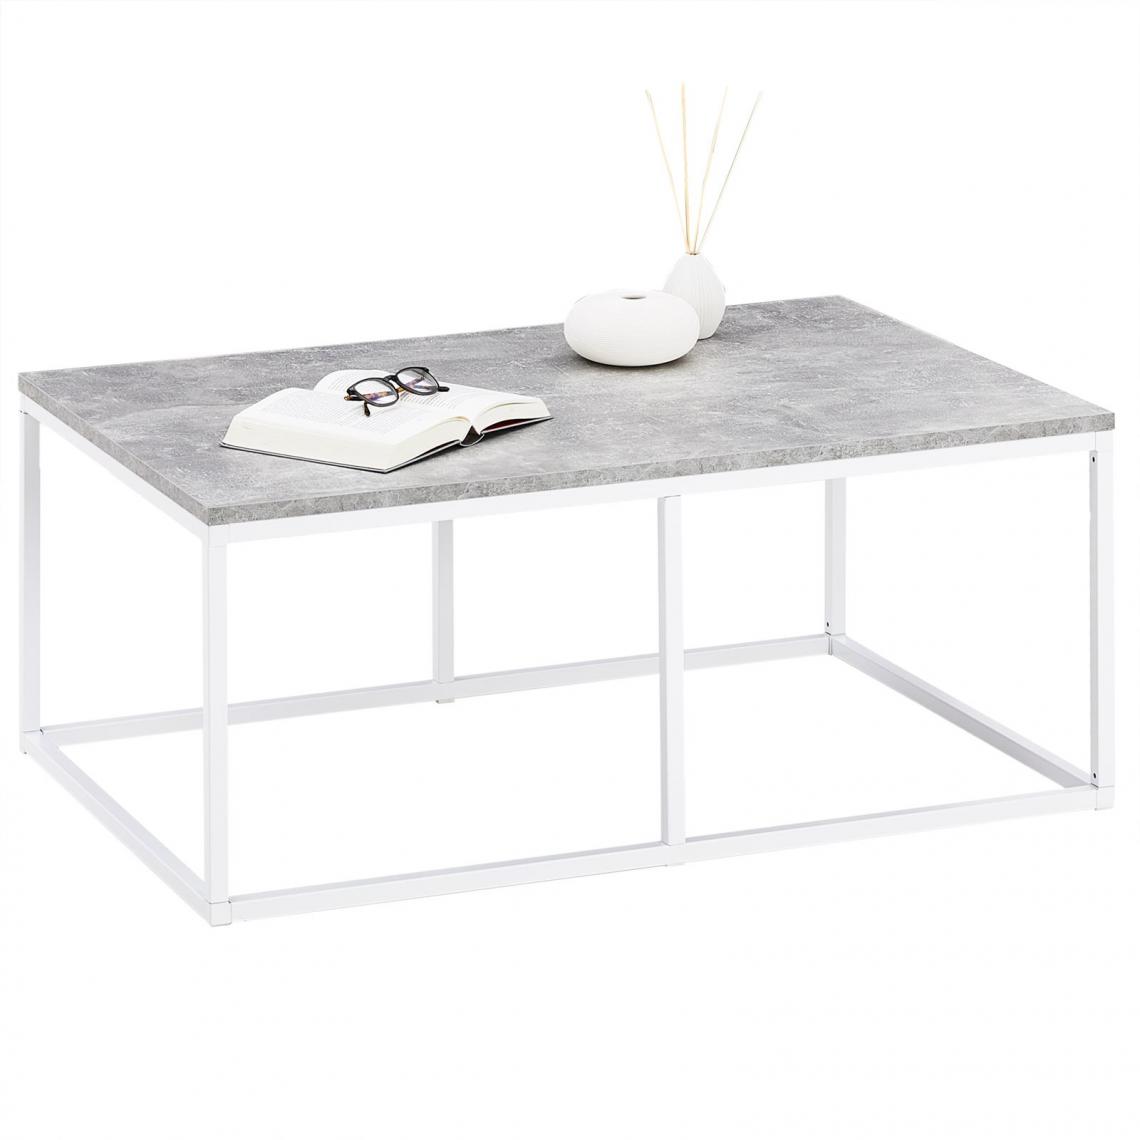 Idimex - Table basse VESTA, cadre en métal blanc et plateau en mélaminé décor béton - Tables basses